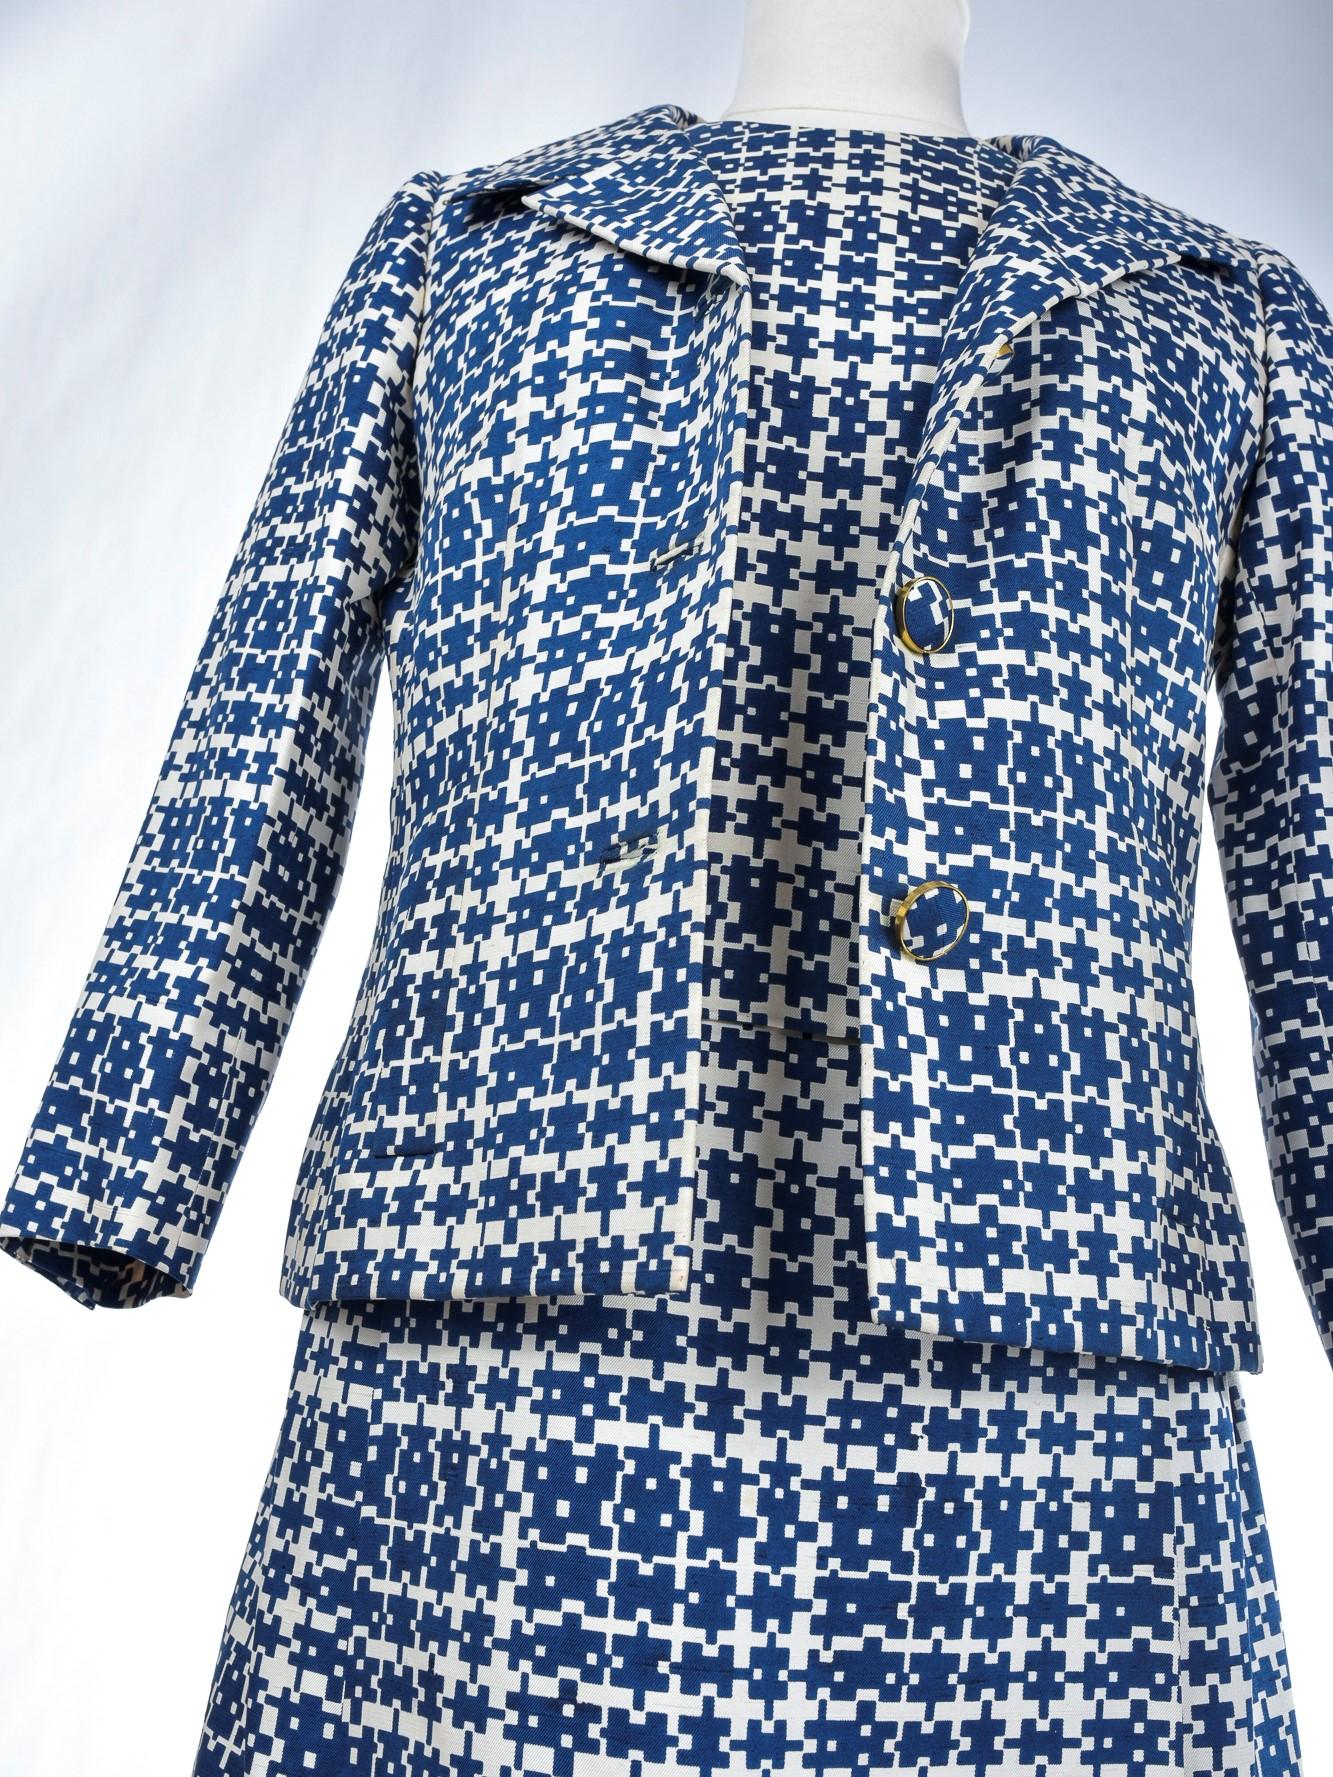 Circa 1956 - 1960

France

Intéressant costume en soie imprimée composé d'une robe sans manches et d'une veste, probablement des débuts de Jules-François Crahay pour Nina Ricci. Magnifique imprimé marine avec des labyrinthes géométriques sur un fond